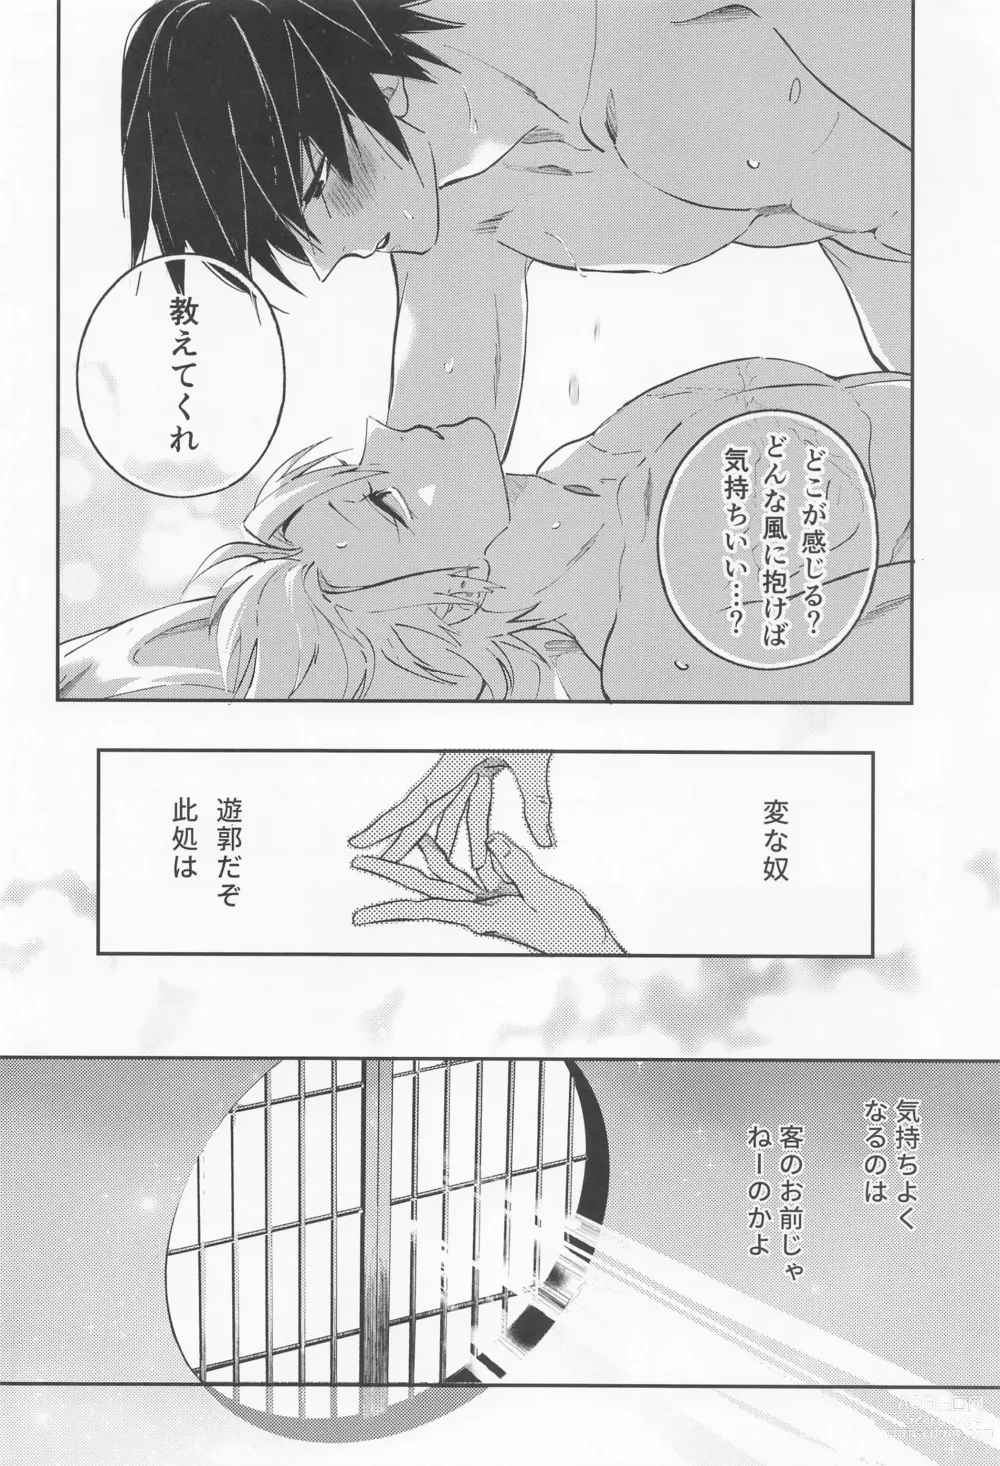 Page 39 of doujinshi Utakata  First volume